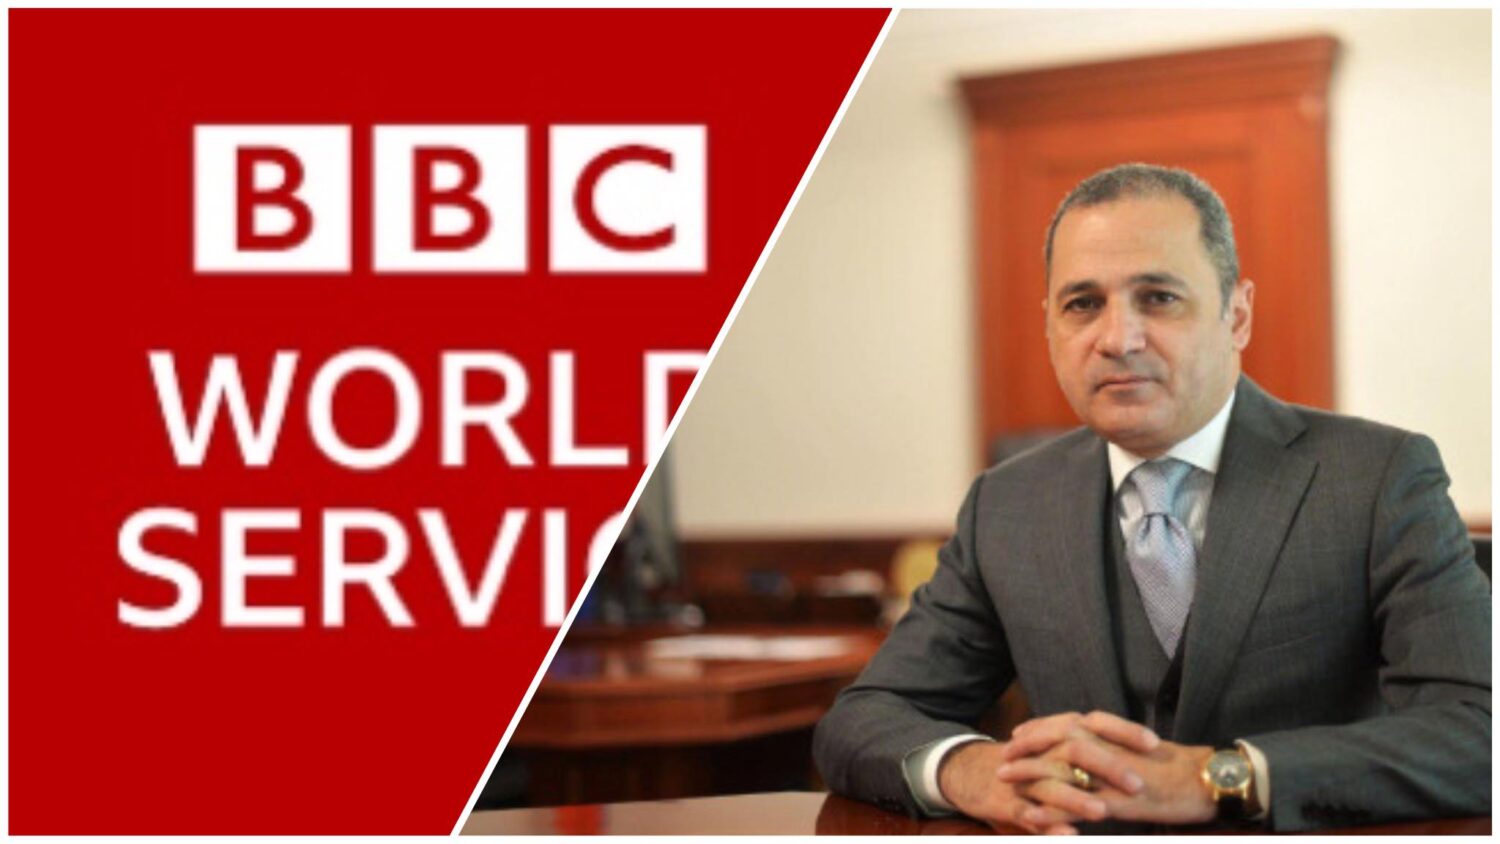 Ընդդիմադիր գործիչ Վահե Հակոբյանի վրա հարձակվեցին այն բանից հետո, երբ նա վարչապետին «պոպուլիստ» կոչեց՝ BBC-ի անդրադարձը